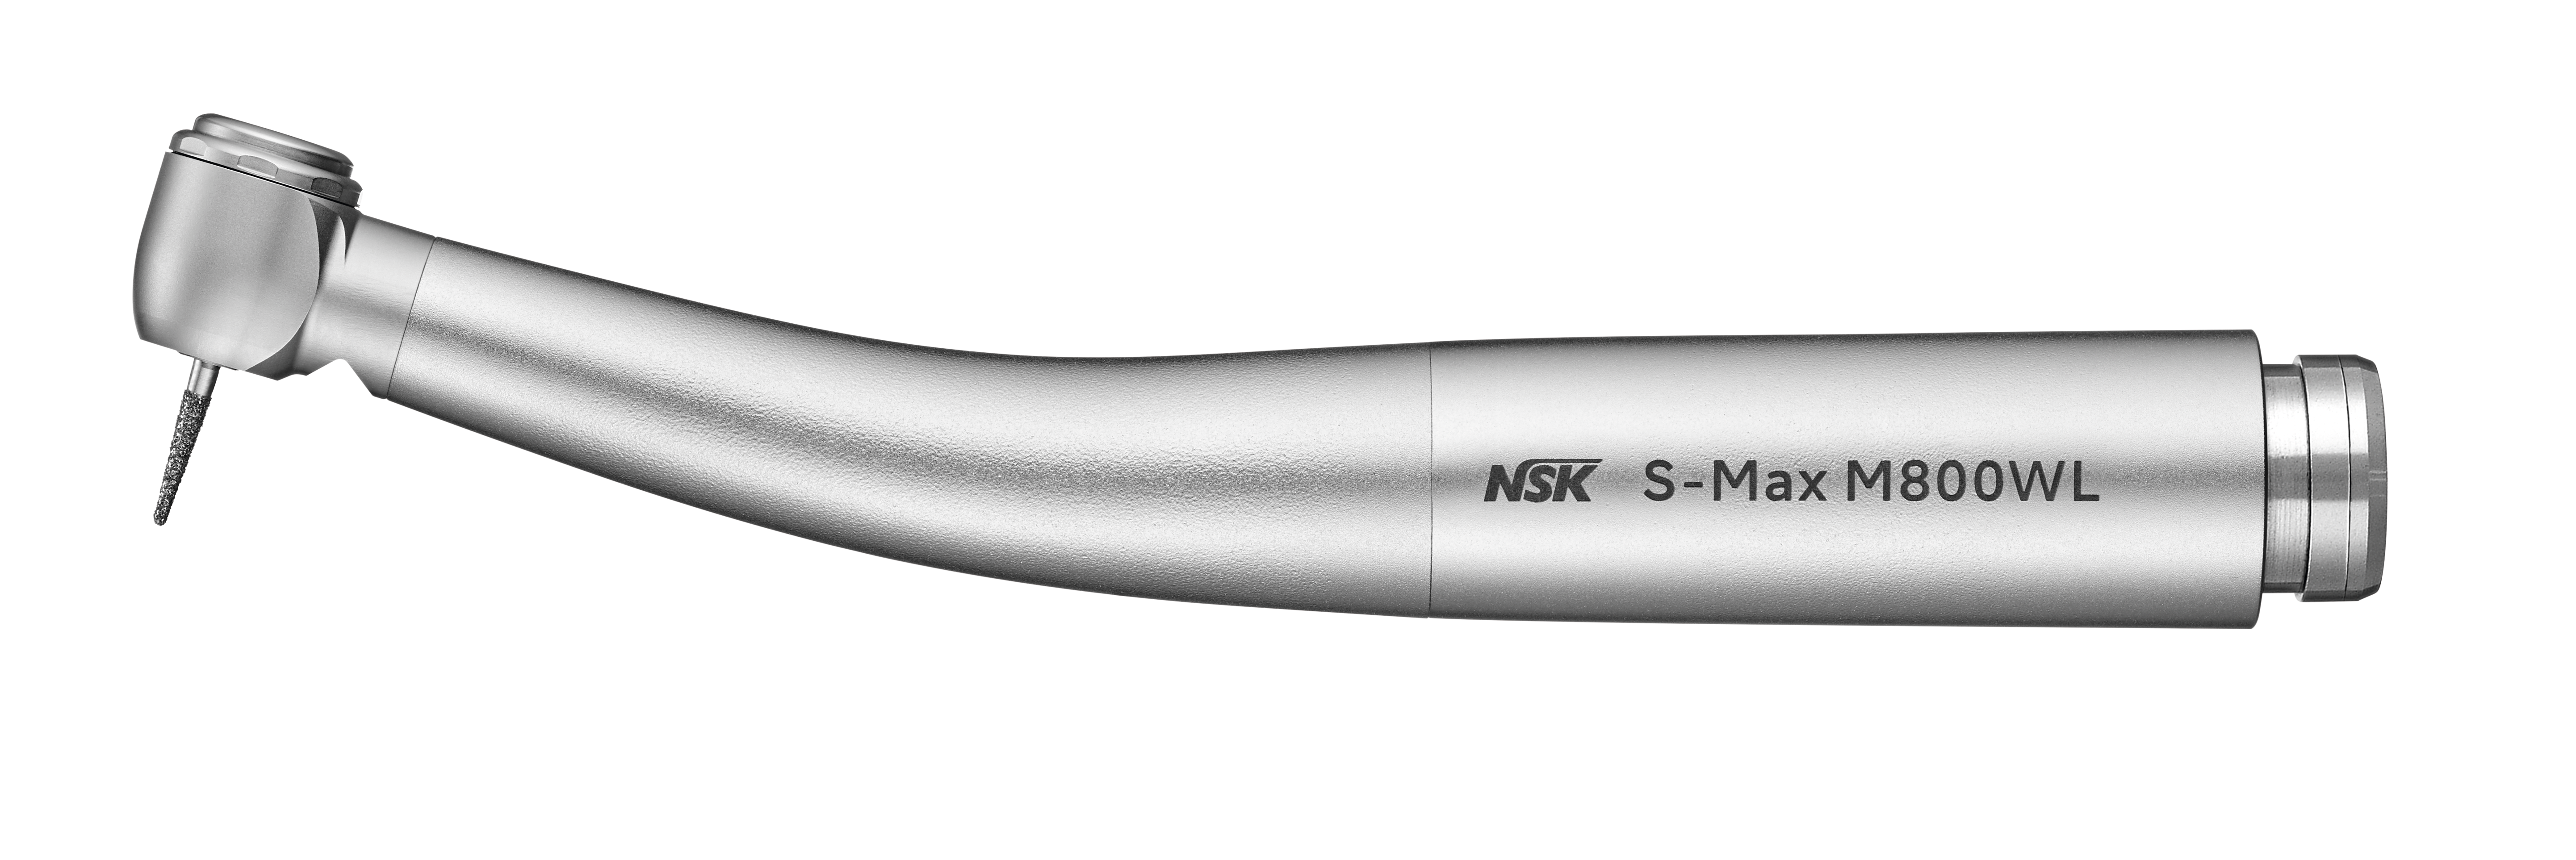 NSK S-Max M800WL, Mini-Lichtturbine, W&H Roto Quick-Anschluss 4-fach Spray, Druckknopfspannzange, Keramik-Kugellager